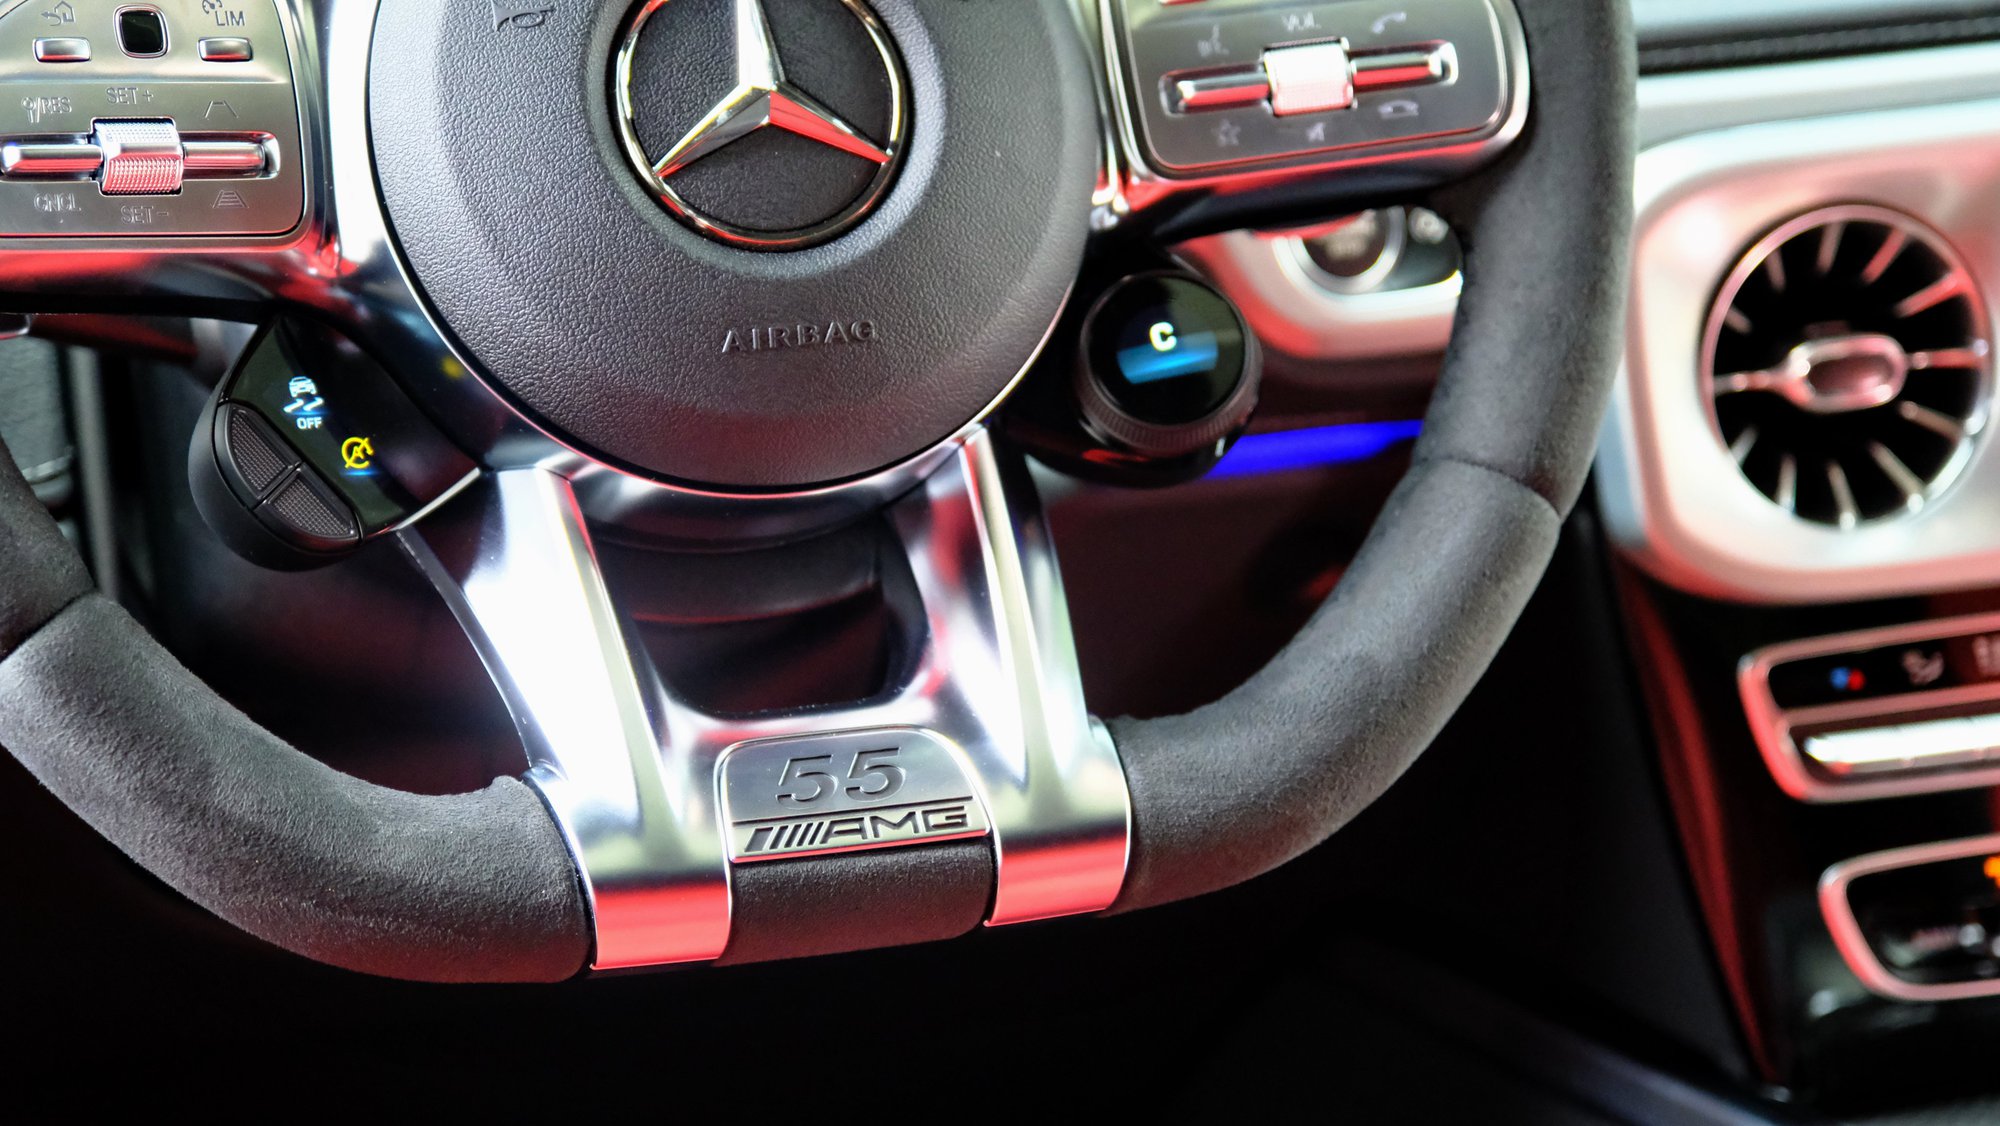 Chi tiết Mercedes-AMG G 63 bản đặc biệt giá 12,61 tỷ vừa về đại lý: Bản thường cũng dễ dàng 'copy' ngoại hình - Ảnh 8.